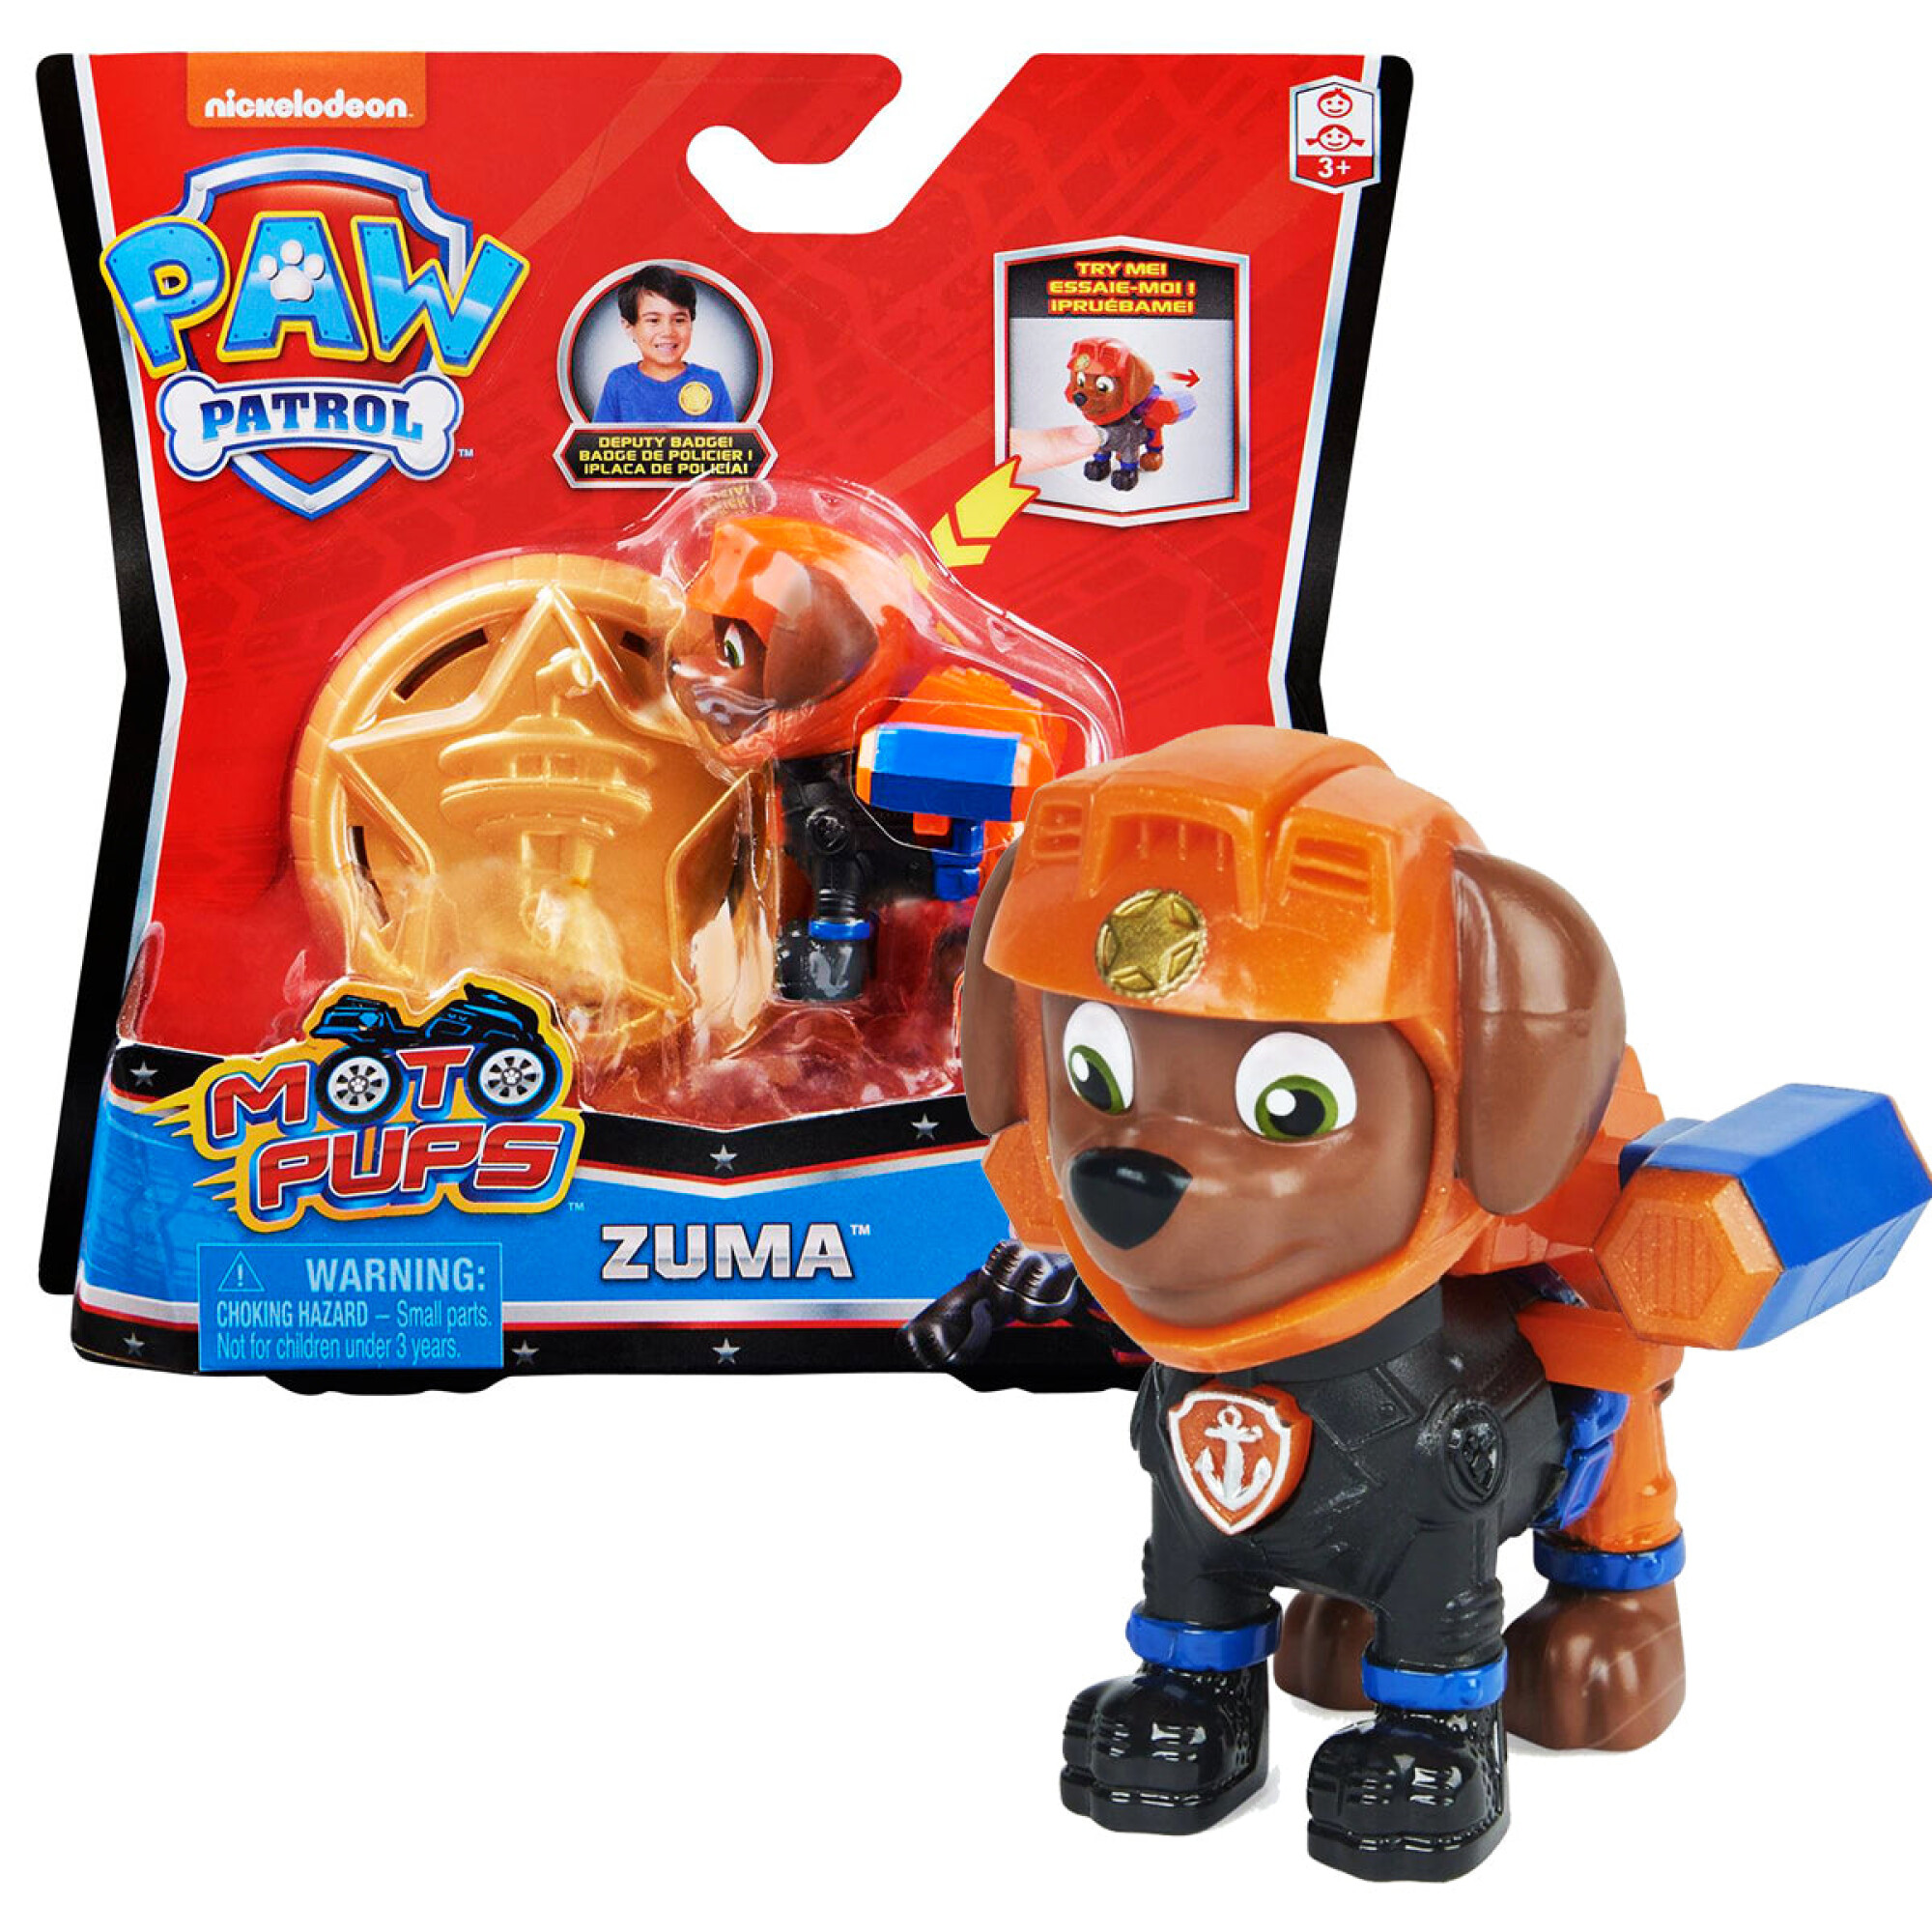 Muñeco de Zuma de La Patrulla Canina